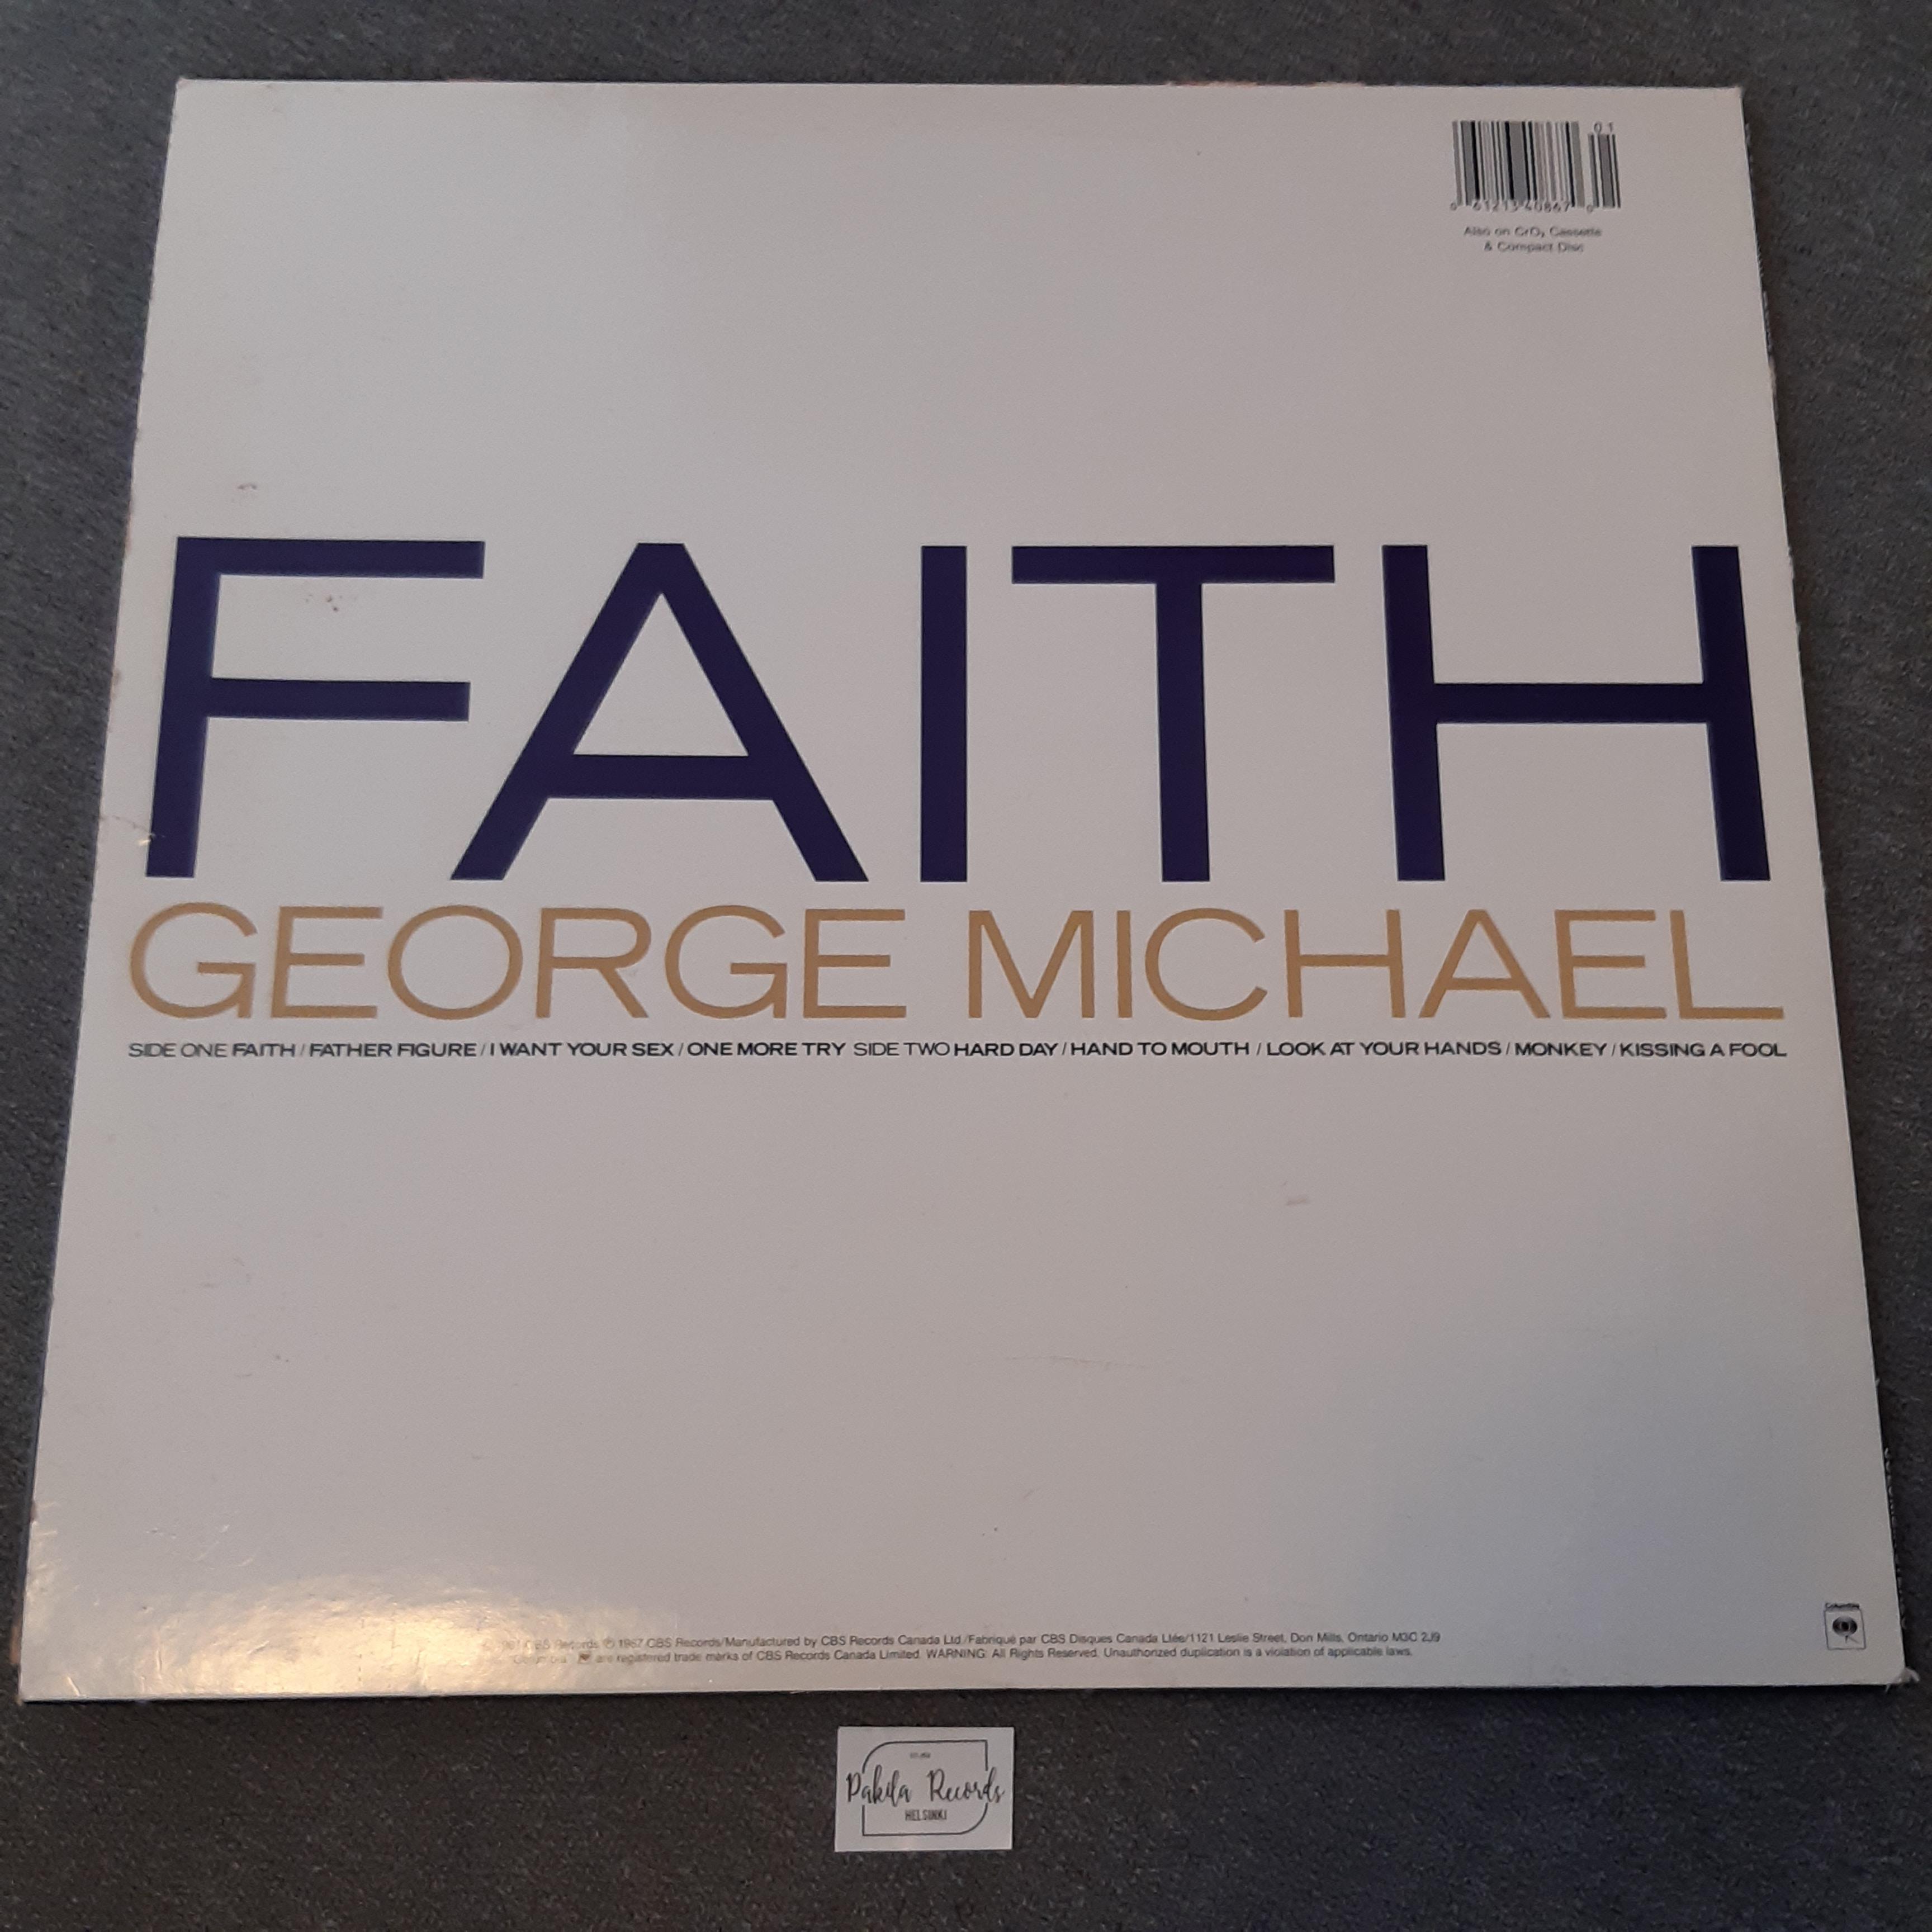 George Michael - Faith - LP (käytetty)